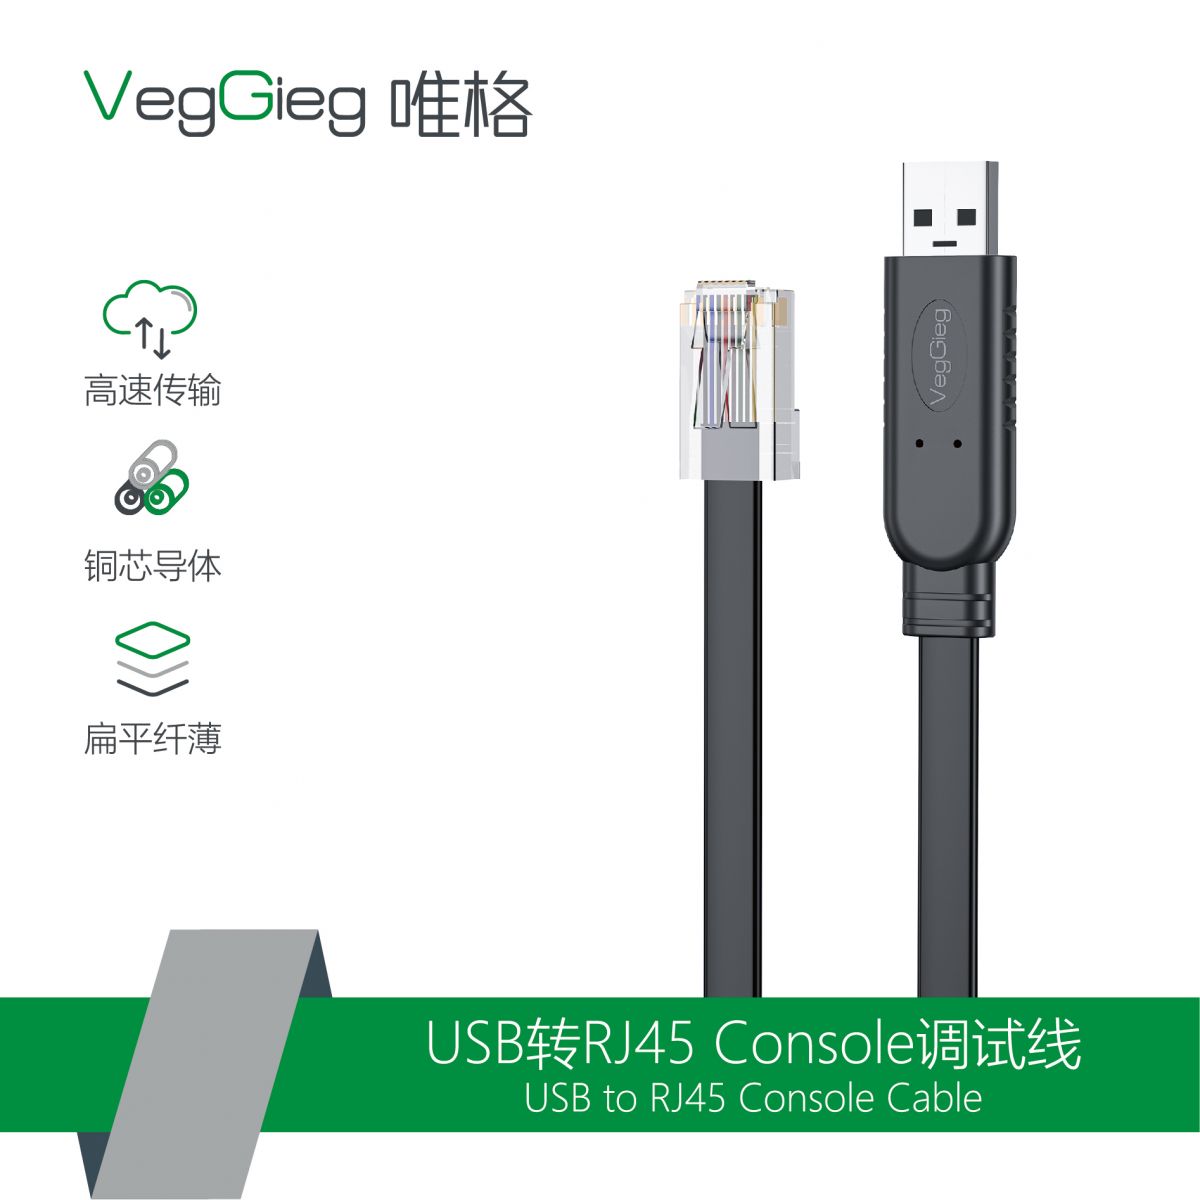 Cáp lập trình Console USB to RJ45 V-U403 Veggieg